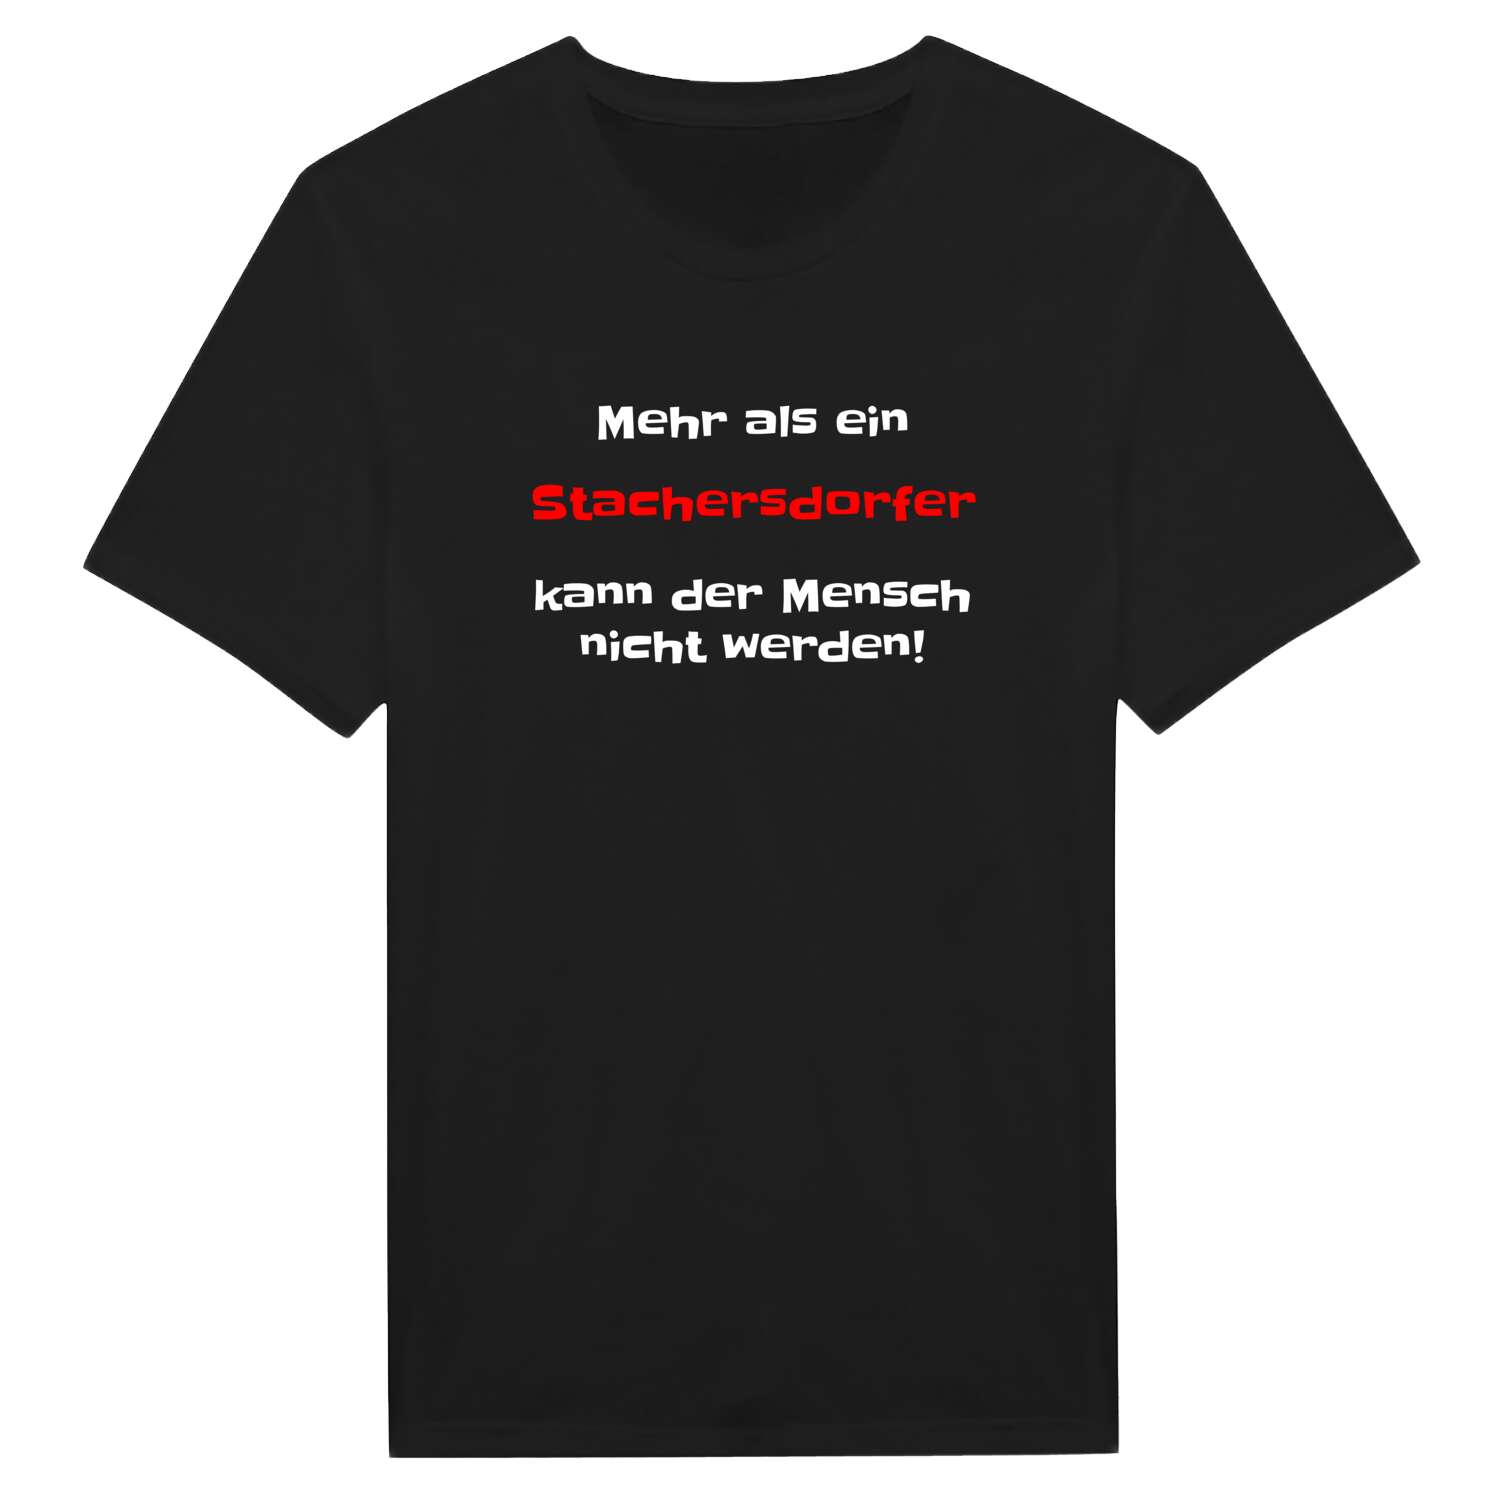 Stachersdorf T-Shirt »Mehr als ein«